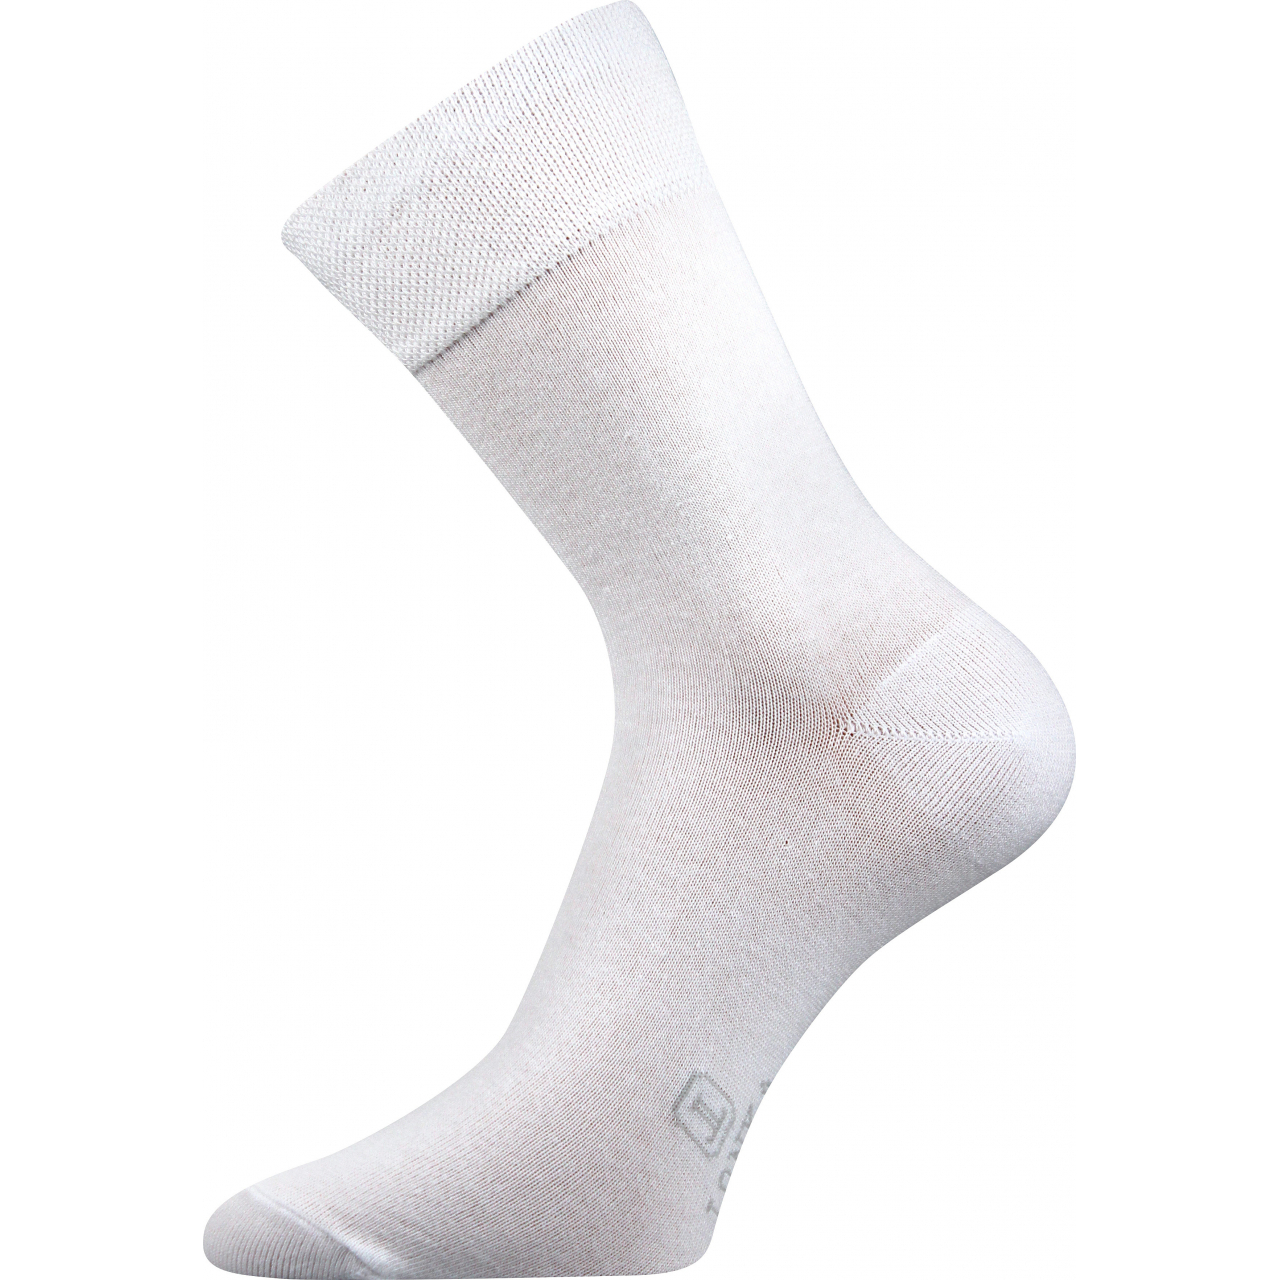 Ponožky pánské Lonka Dasilver - bílé, 43-46